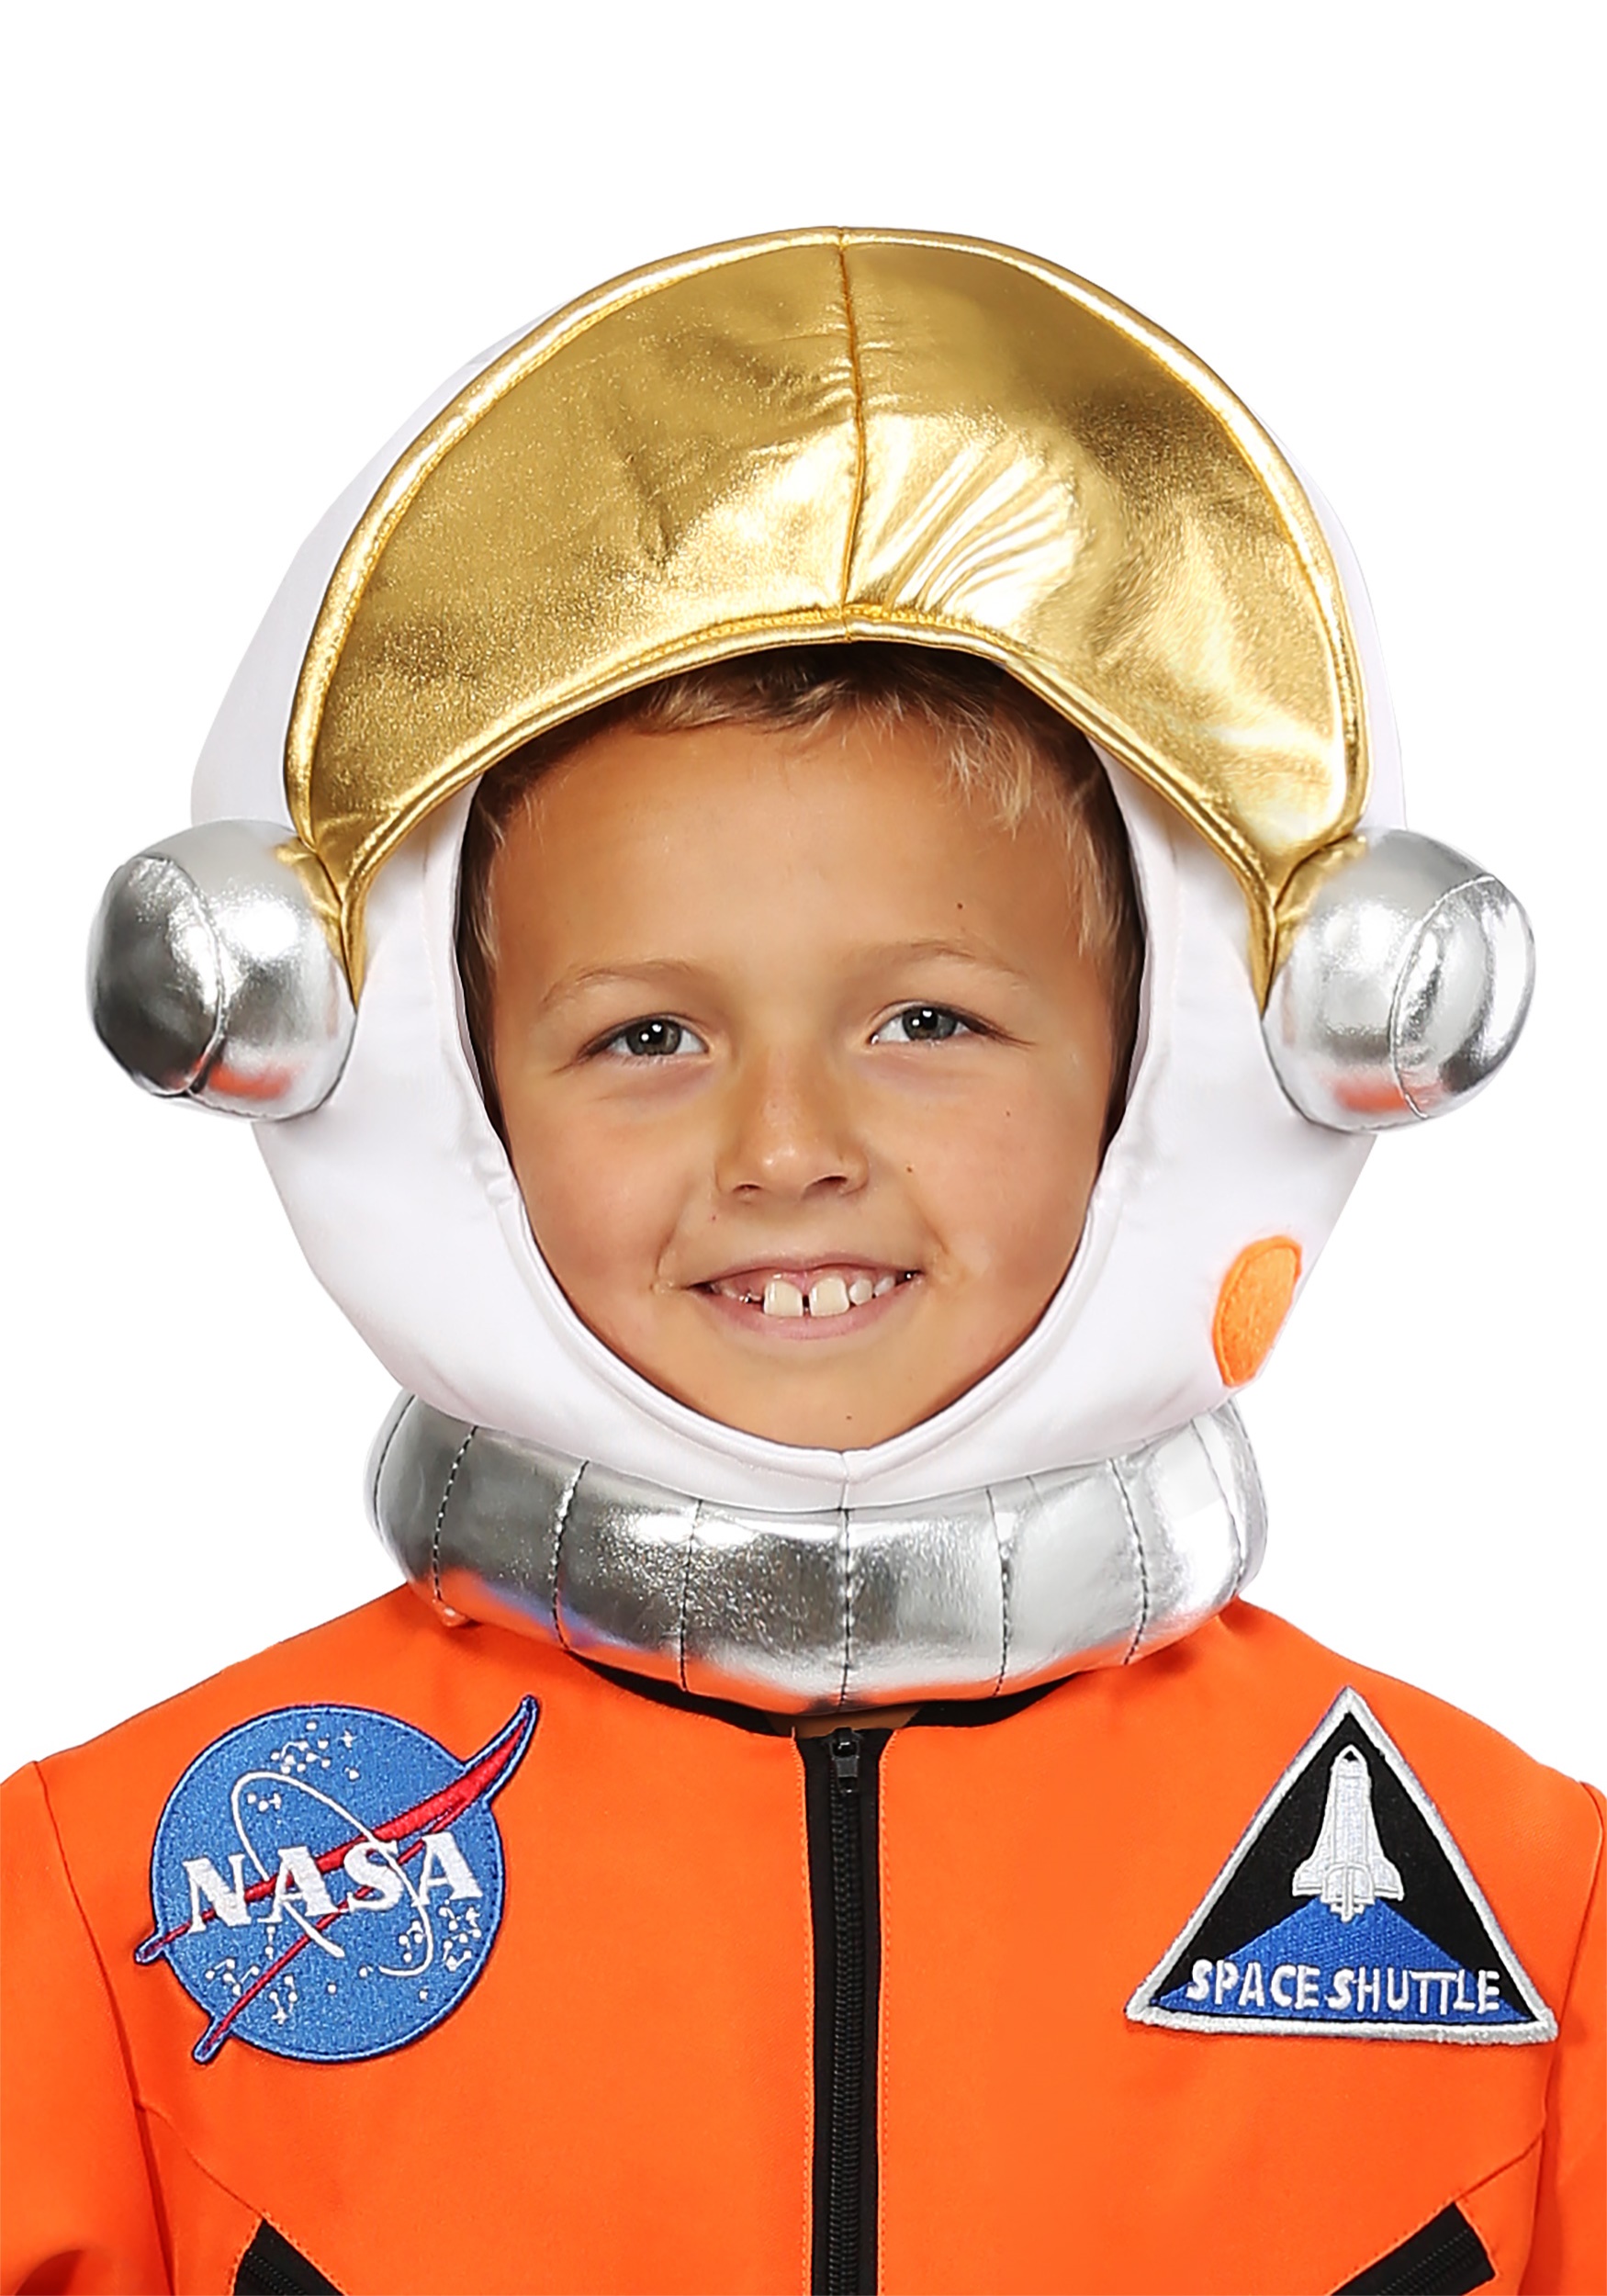 Casco de astronauta para niños, casco espacial para niños de la NASA con  luces LED, visera móvil y sonidos de misión- Casco espacial para niños,  juego